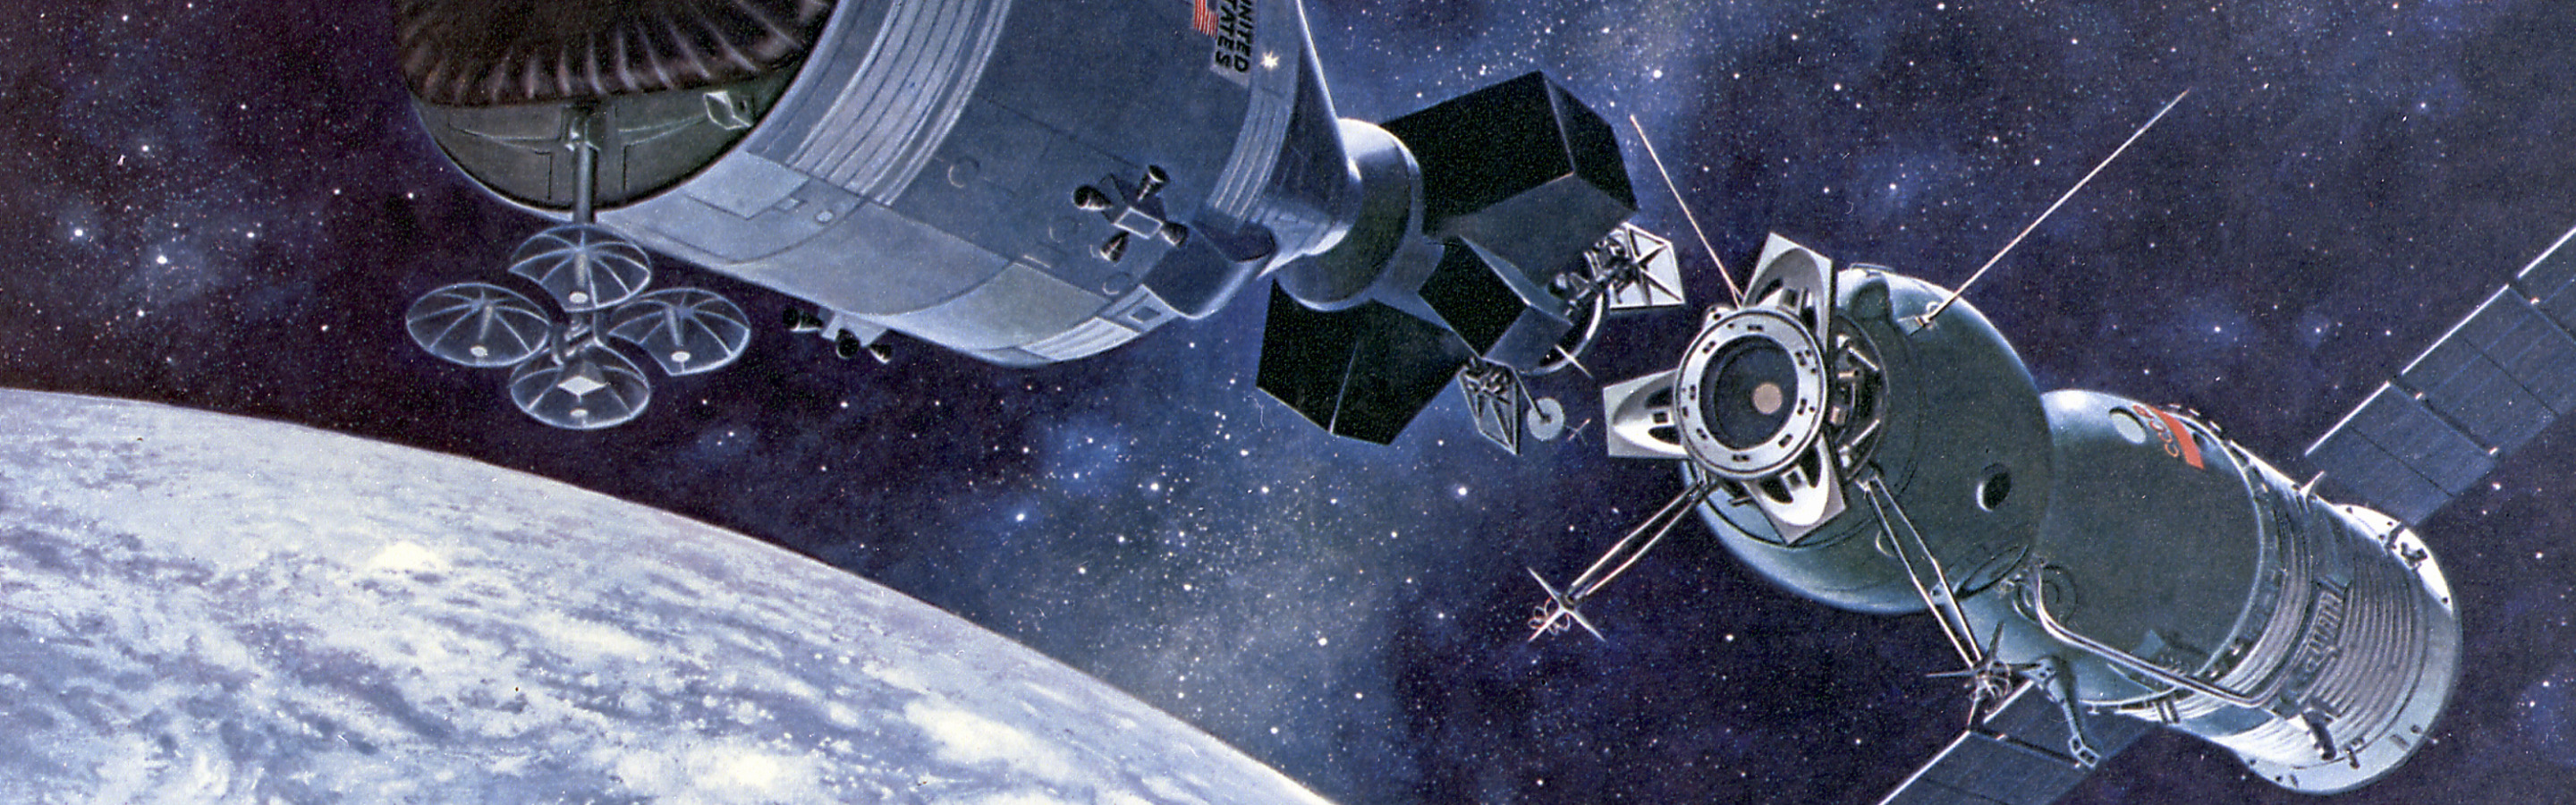 17 июля 1975 года. Союз Аполлон космический корабль. Союз Аполлон 1975. Стыковка Союз Аполлон 1975. Стыковка Союз Аполлон.